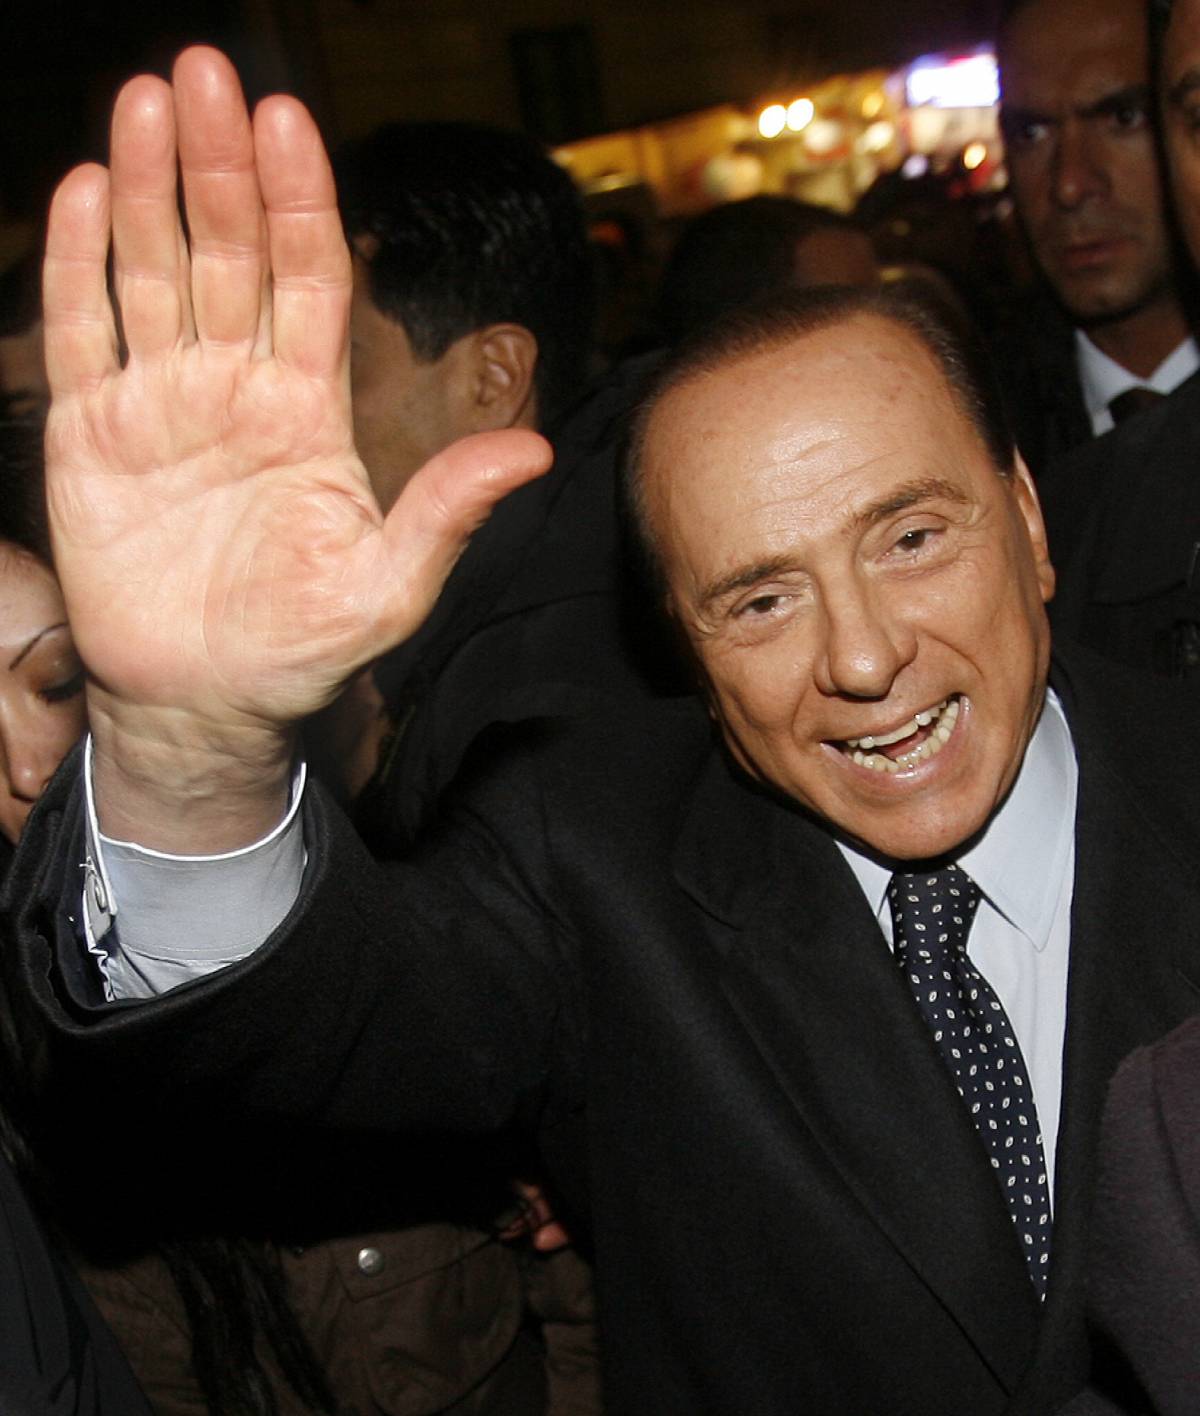 Bagno di folla per Berlusconi superstar